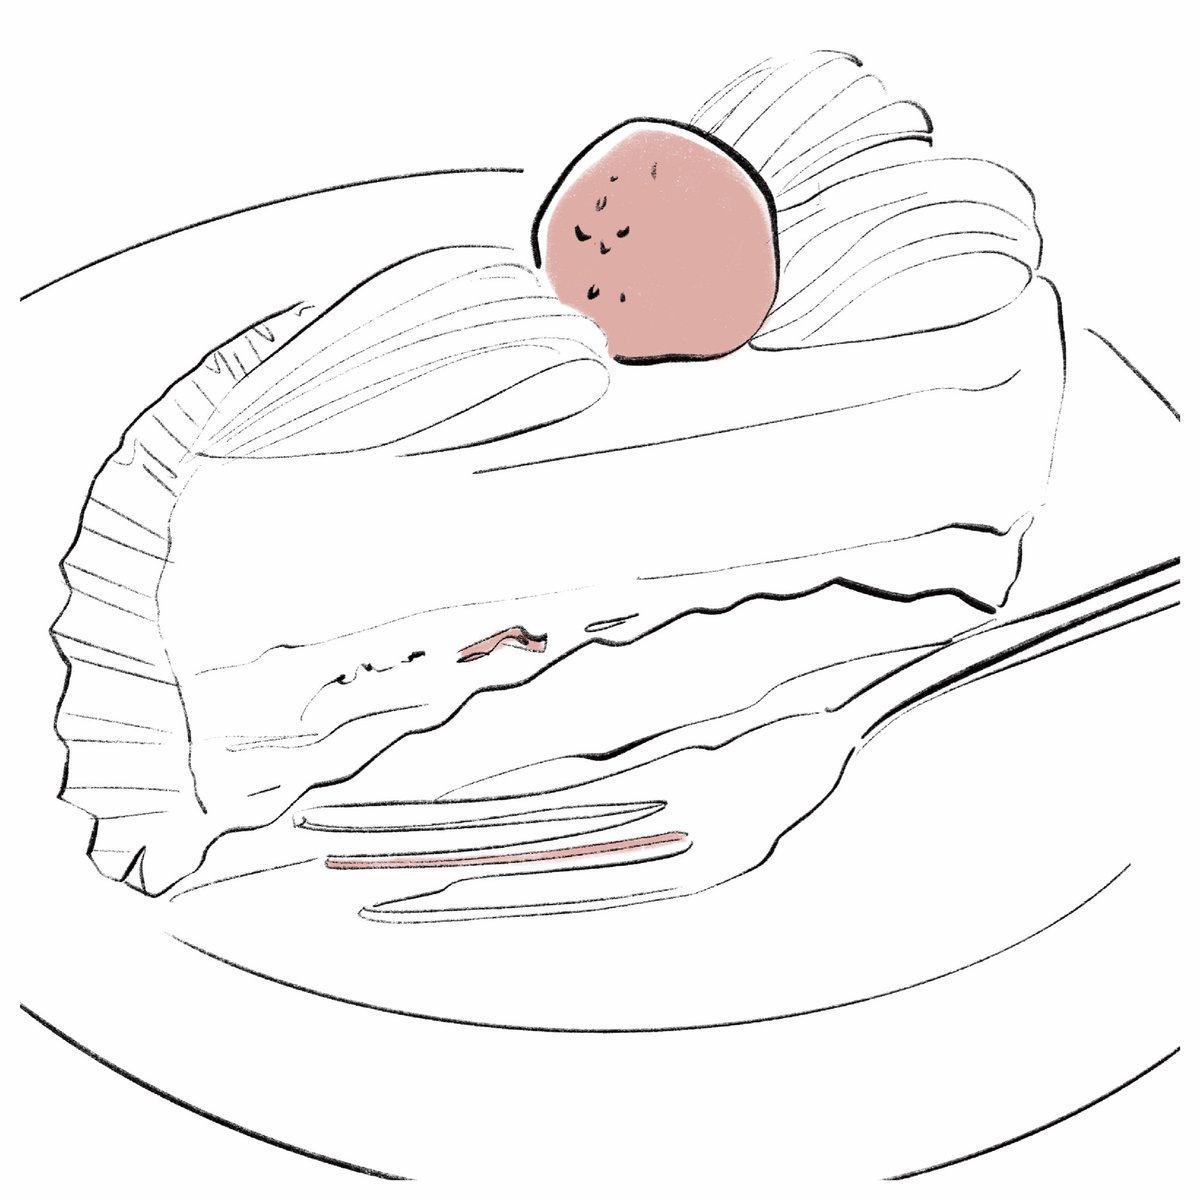 「ショートケーキの苺とわたしは似てる 」|Nakamura Yuuki / ナカムラユウキのイラスト